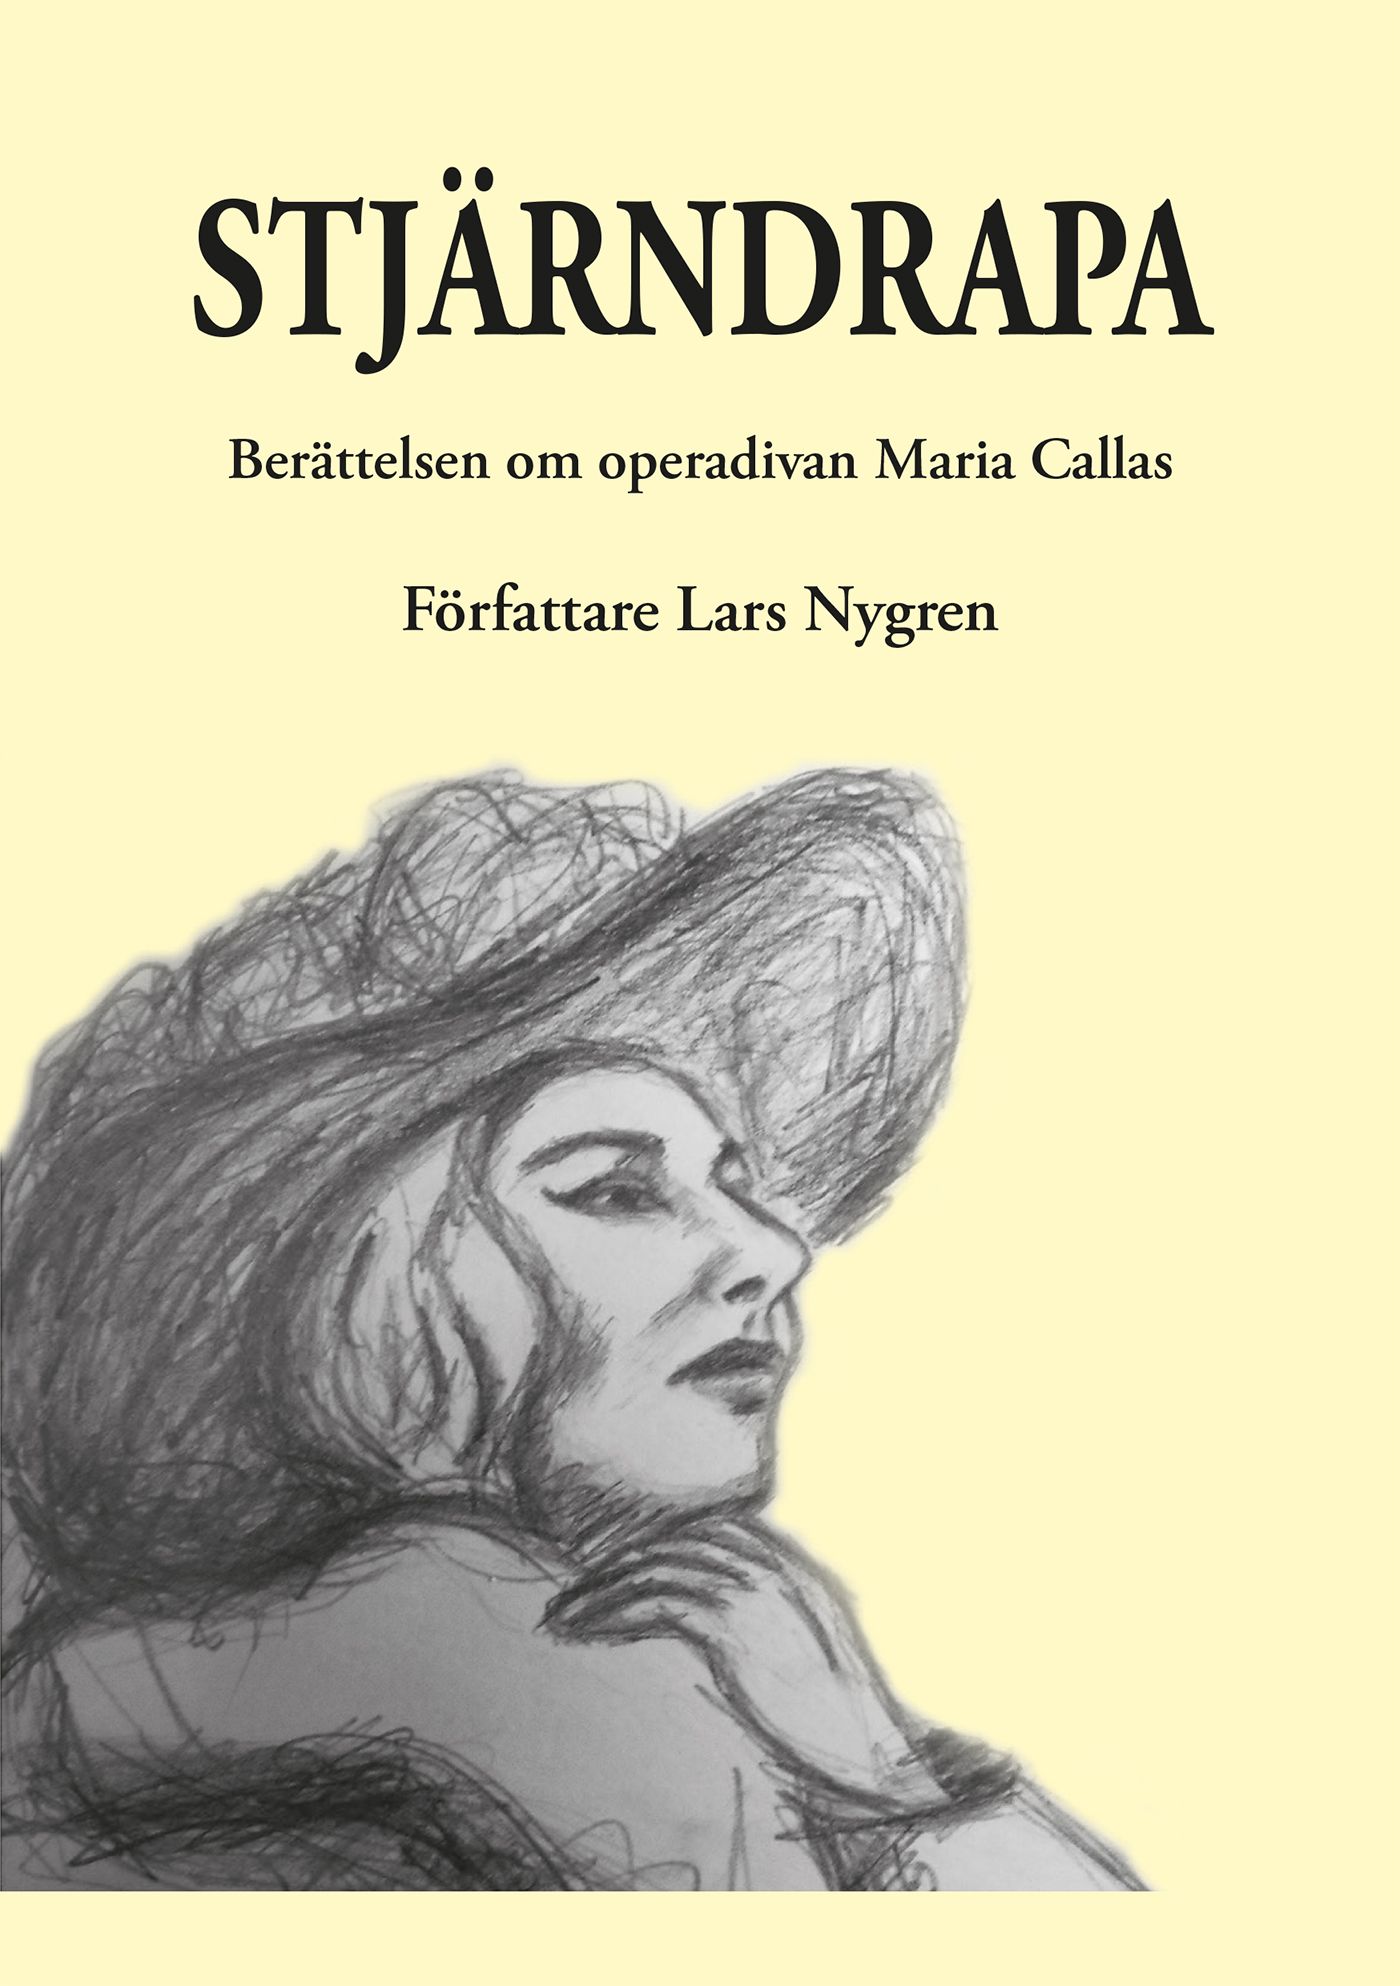 Stjärndrapa, eBook by Lars Nygren